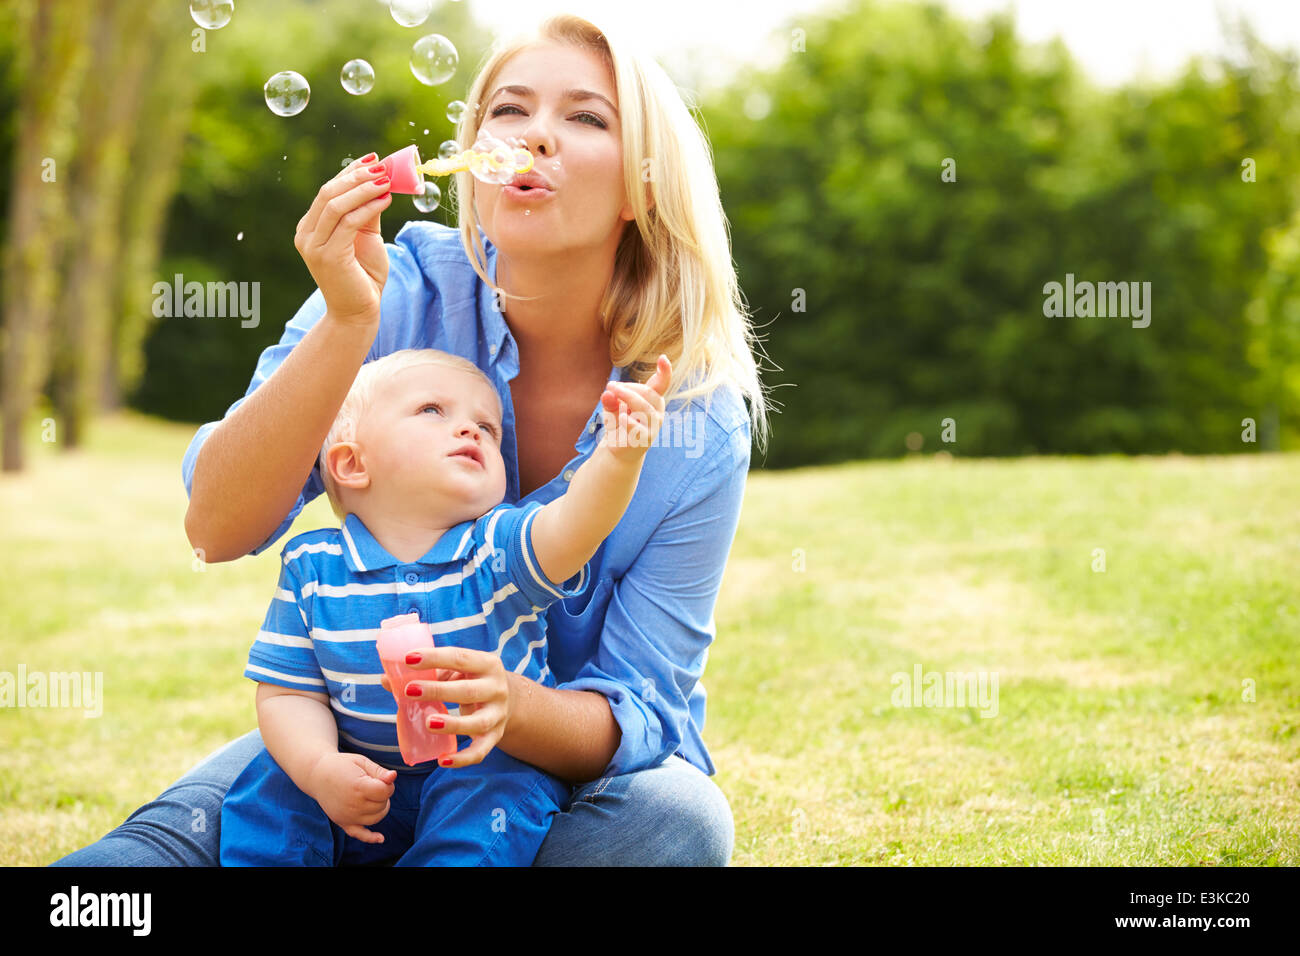 Madre soplando burbujas de joven en el jardín Foto de stock